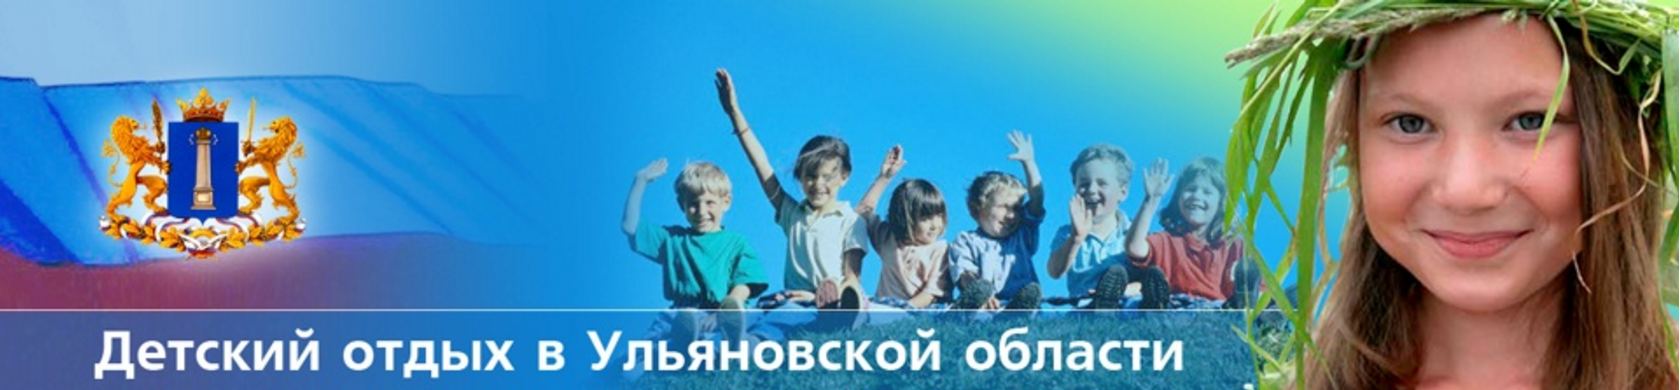 Детский отдых в Ульяновской области.